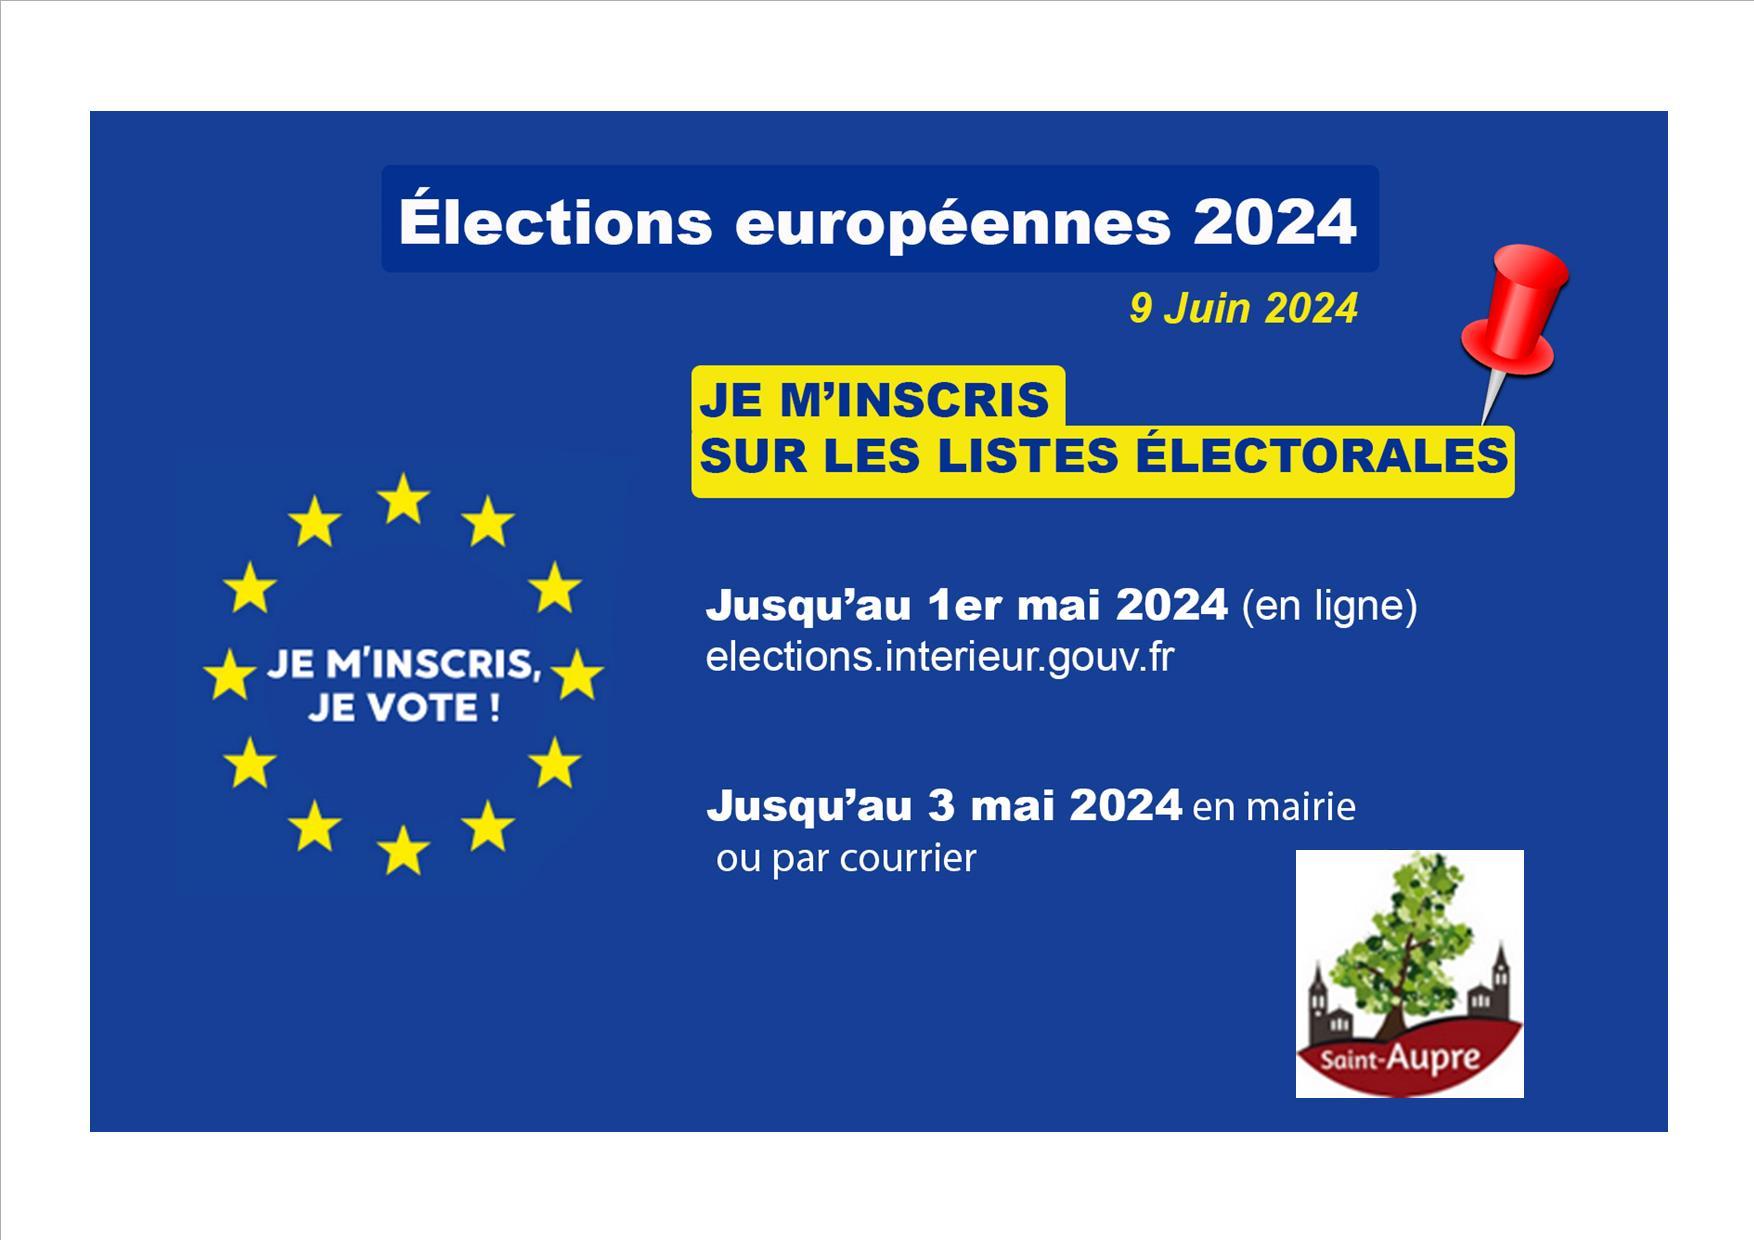 Image de couverture - Dates limites inscriptions sur la liste électorale pour les élections européennes